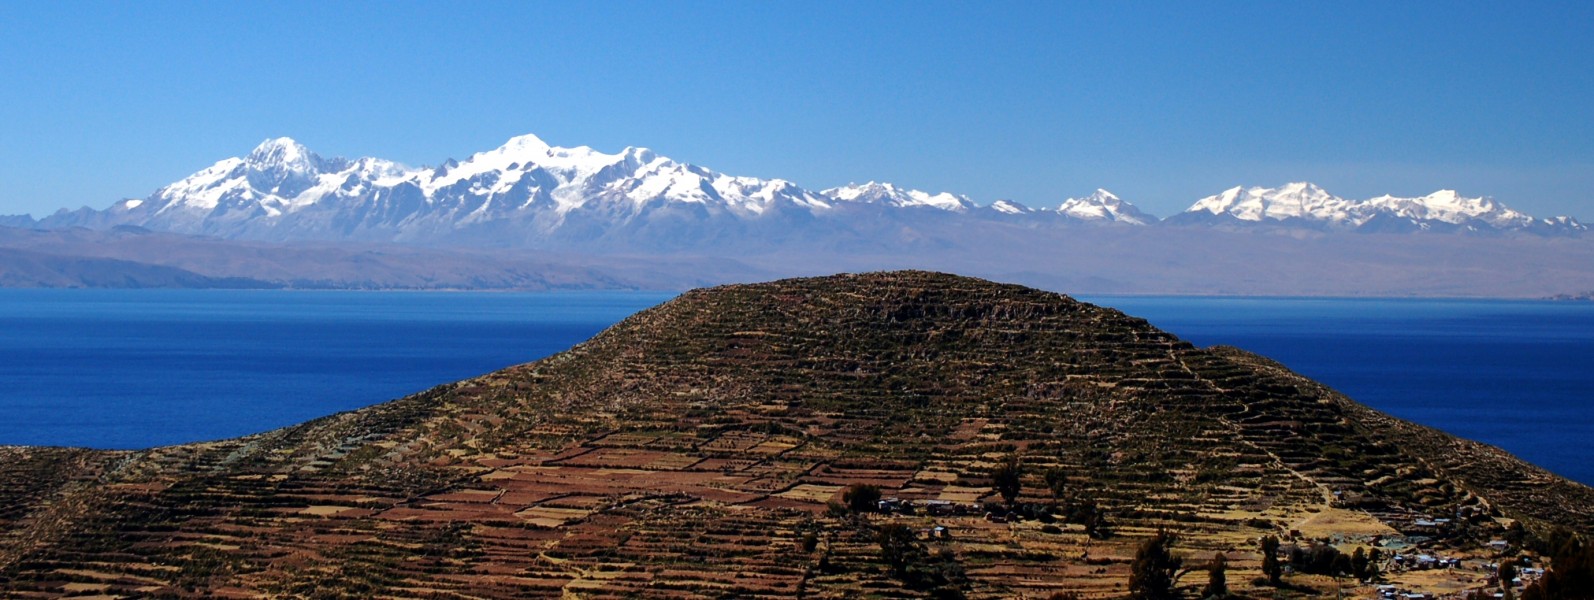 Cordillera Central Bolivia